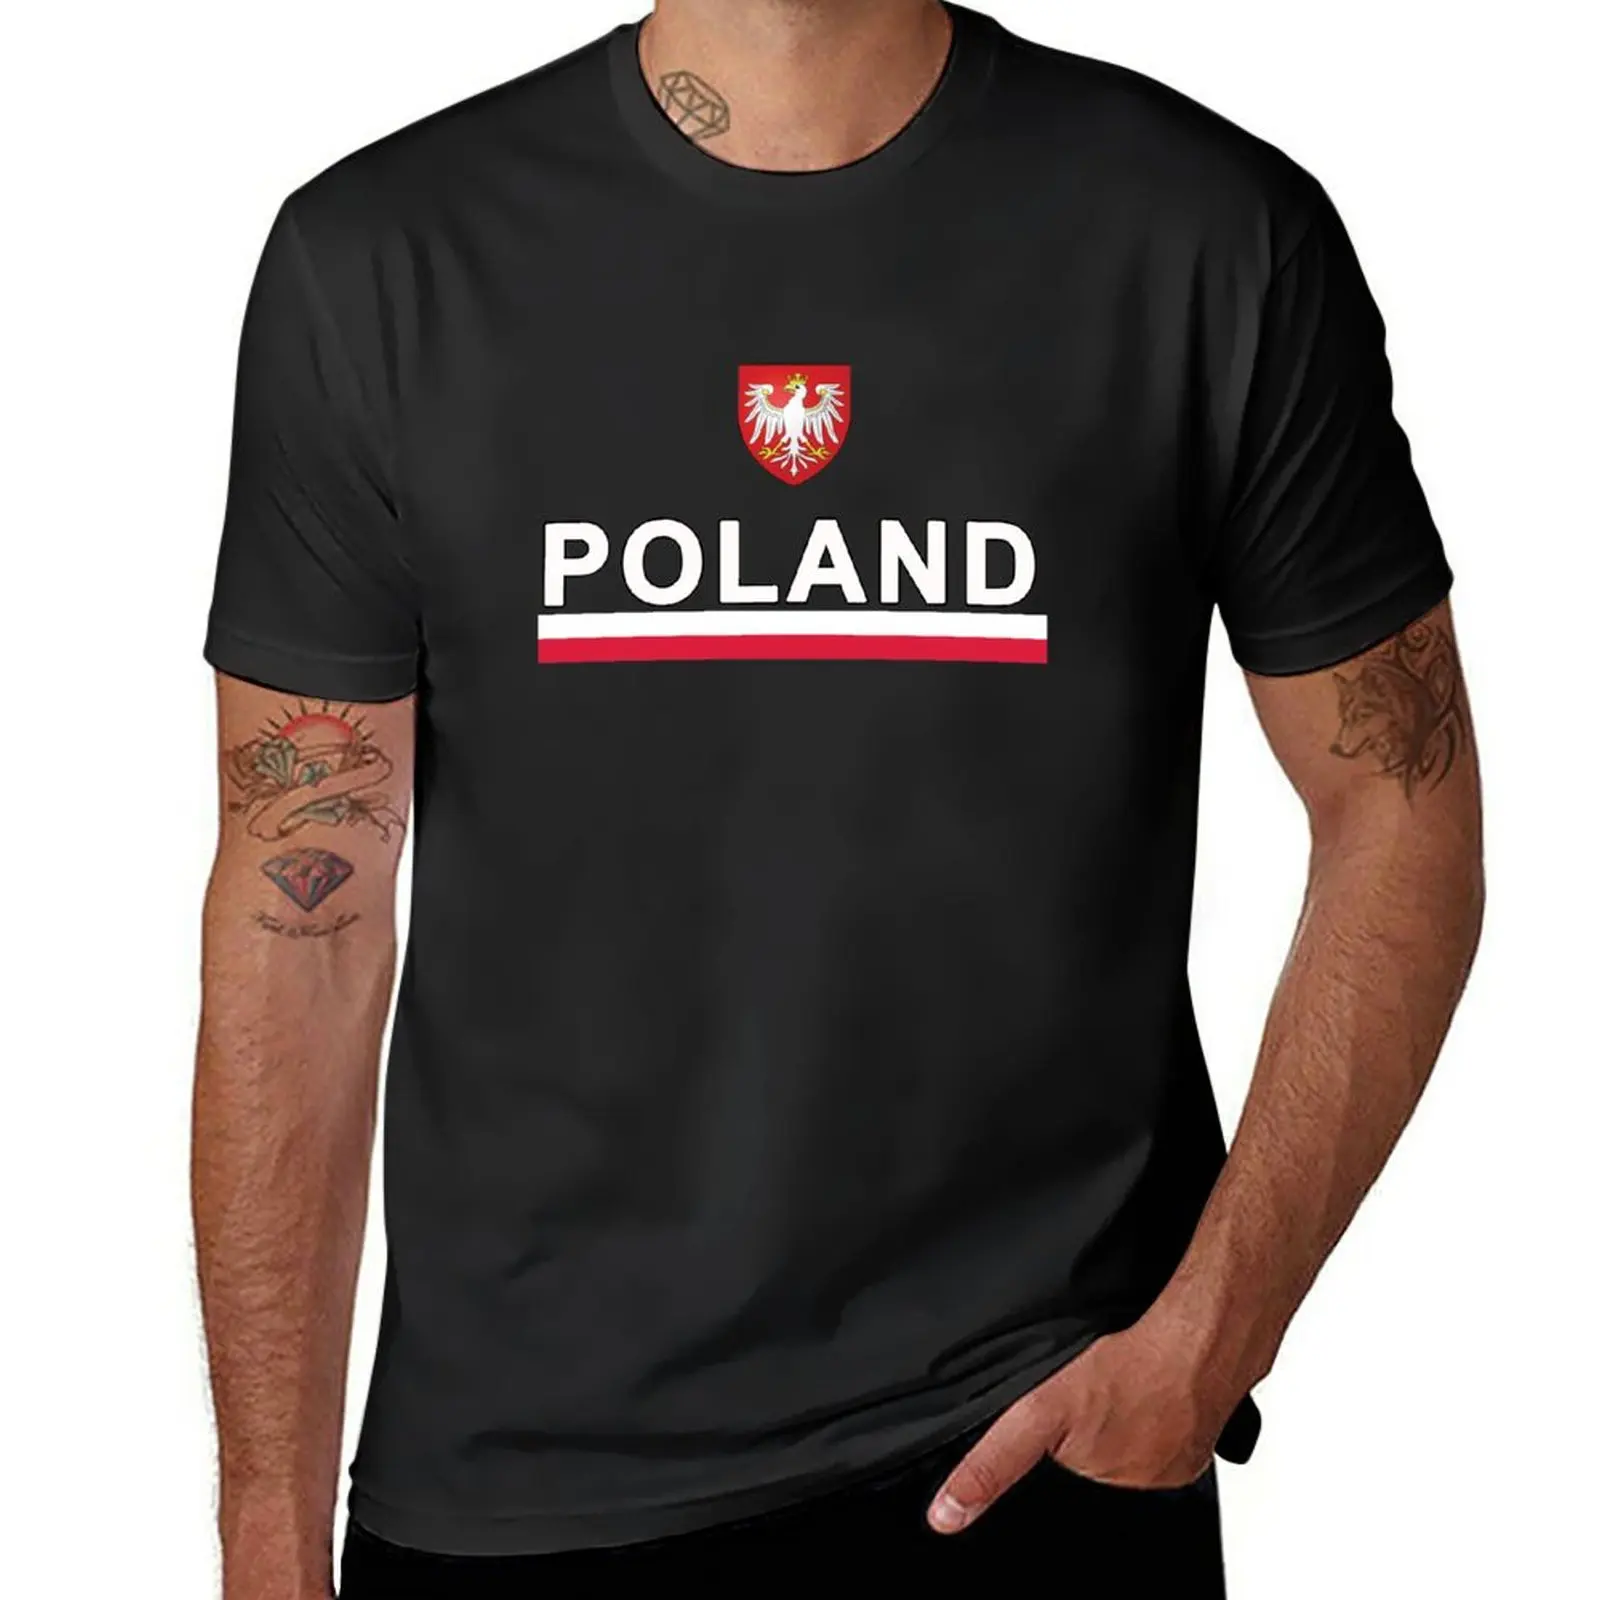 Дизайн польской игровой команды - Футболки польских болельщиков, футболки для тяжеловесов, винтажные футболки, мужские футболки